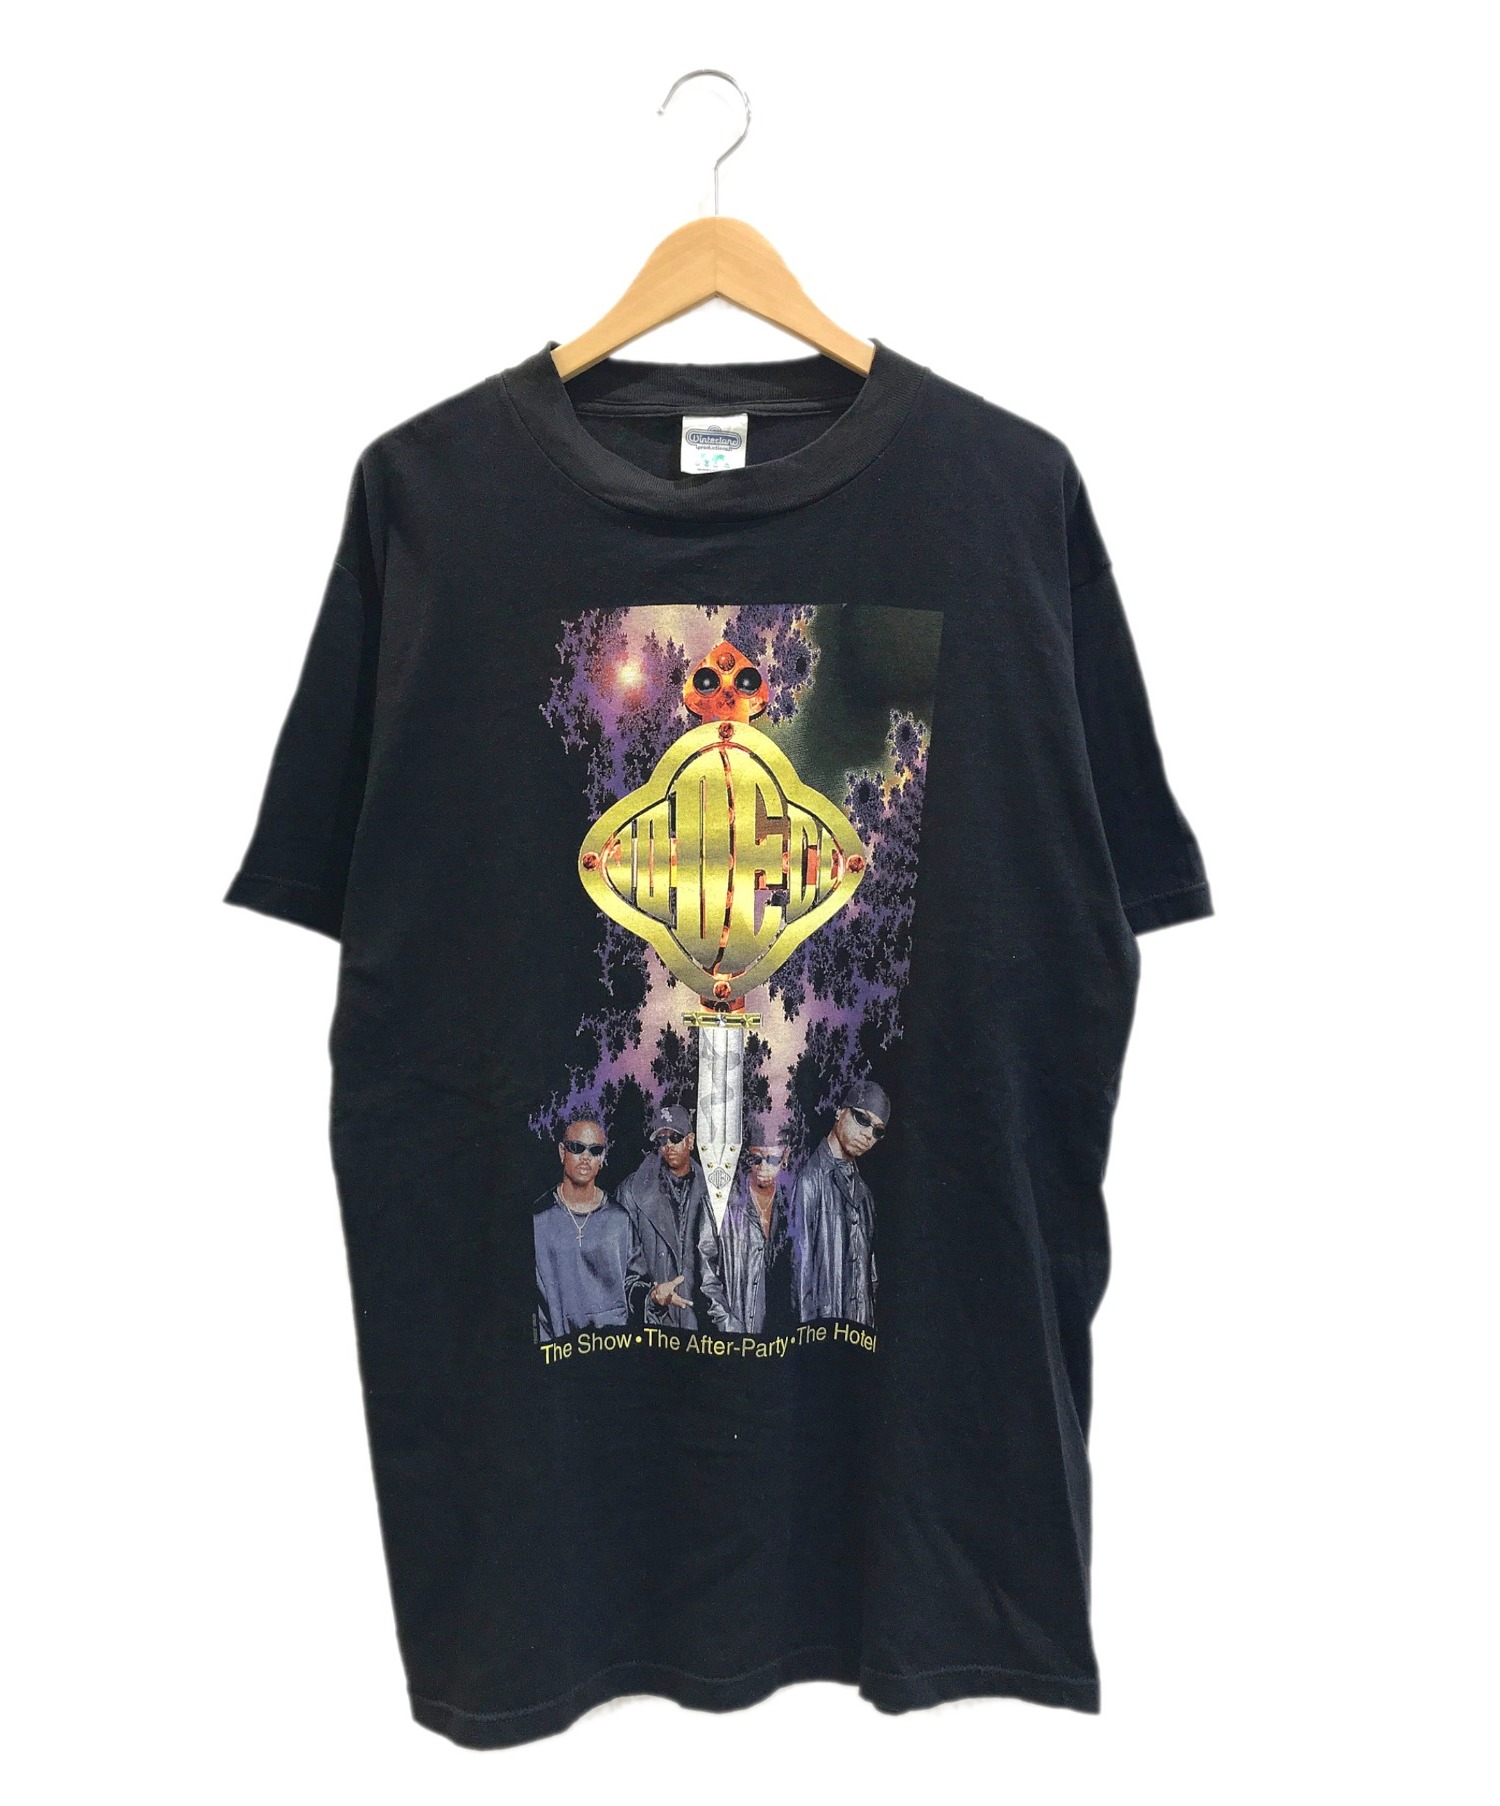 ラップTシャツ (ラップTシャツ) [古着]JODECI R&B Tシャツ ブラック サイズ:L ジョデシィ・1995年・3rdアルバム・USA製